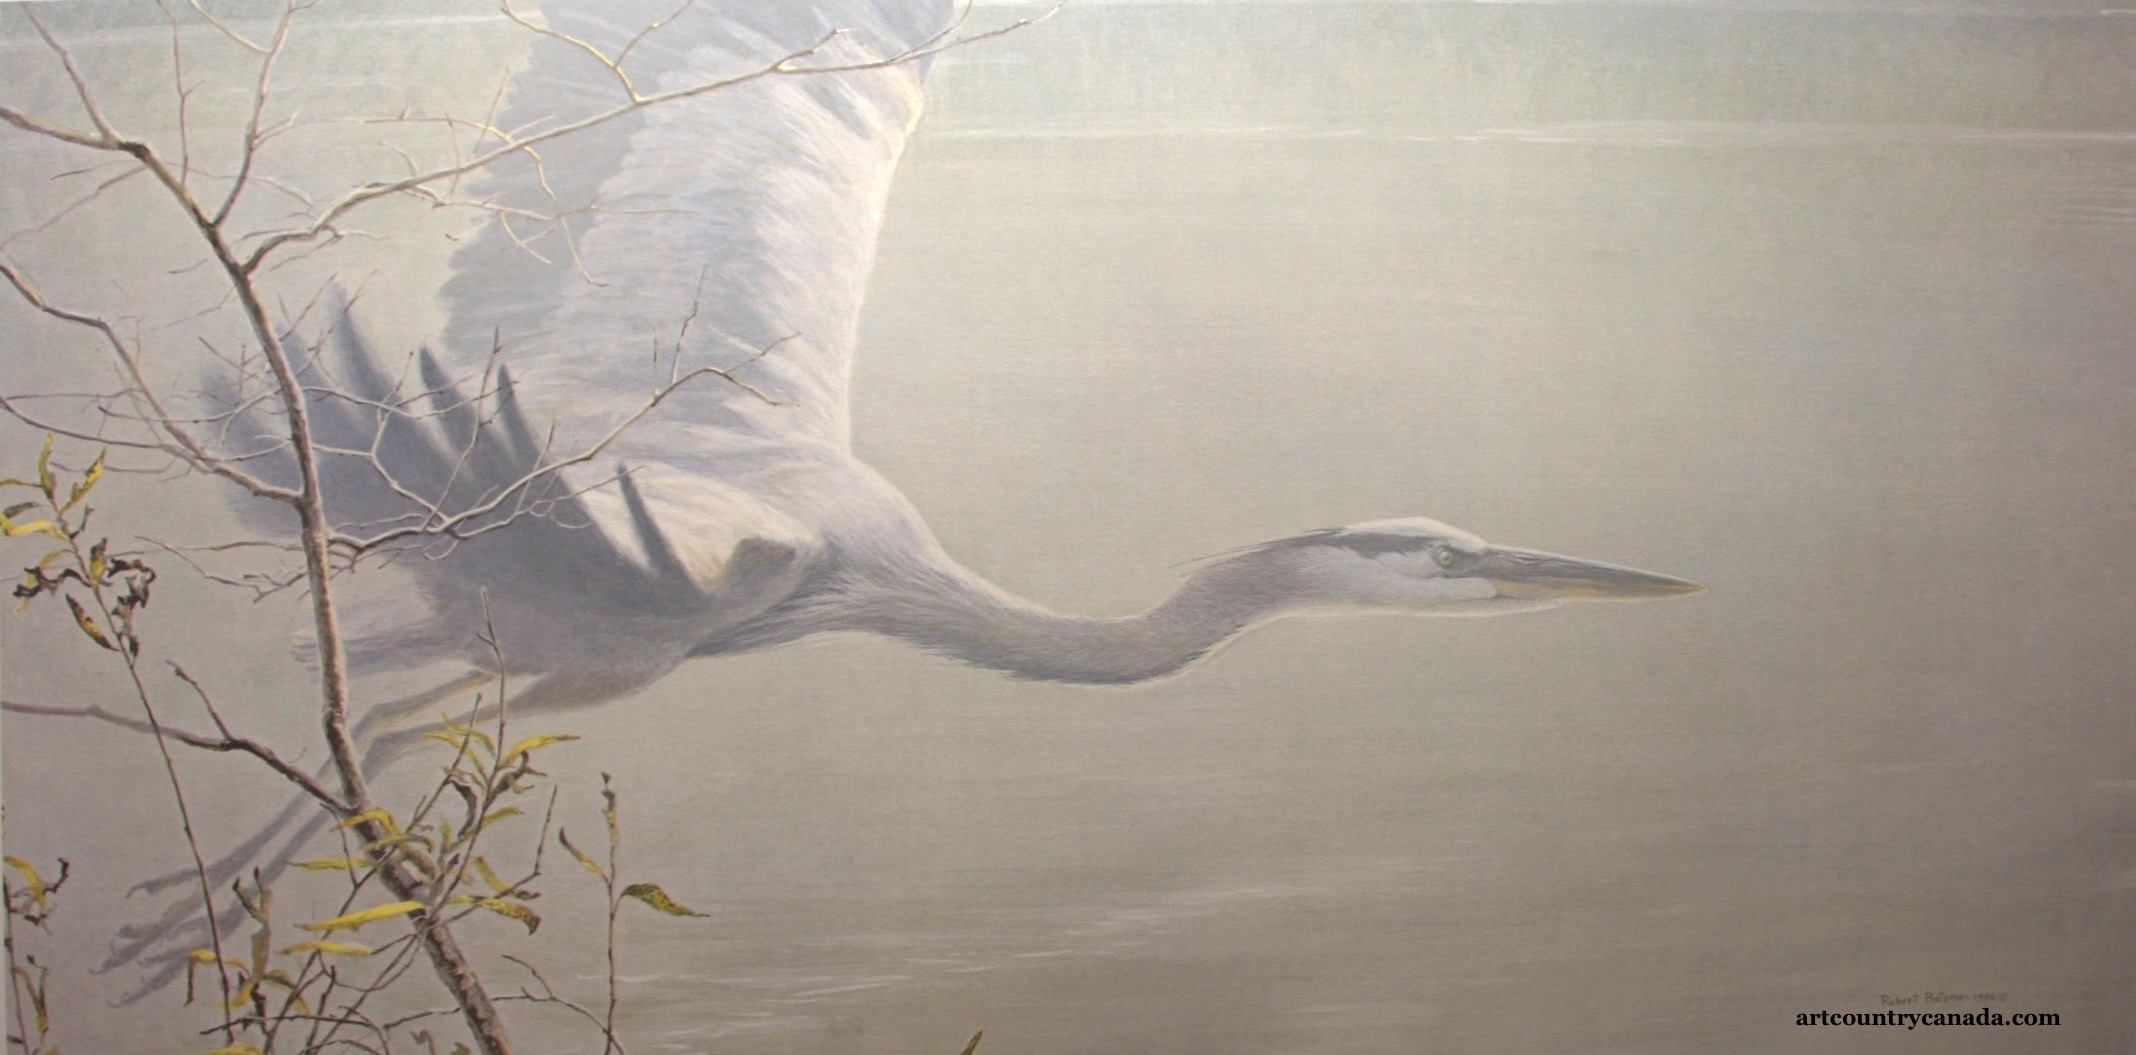 Robert Bateman great Blue heron In Flight